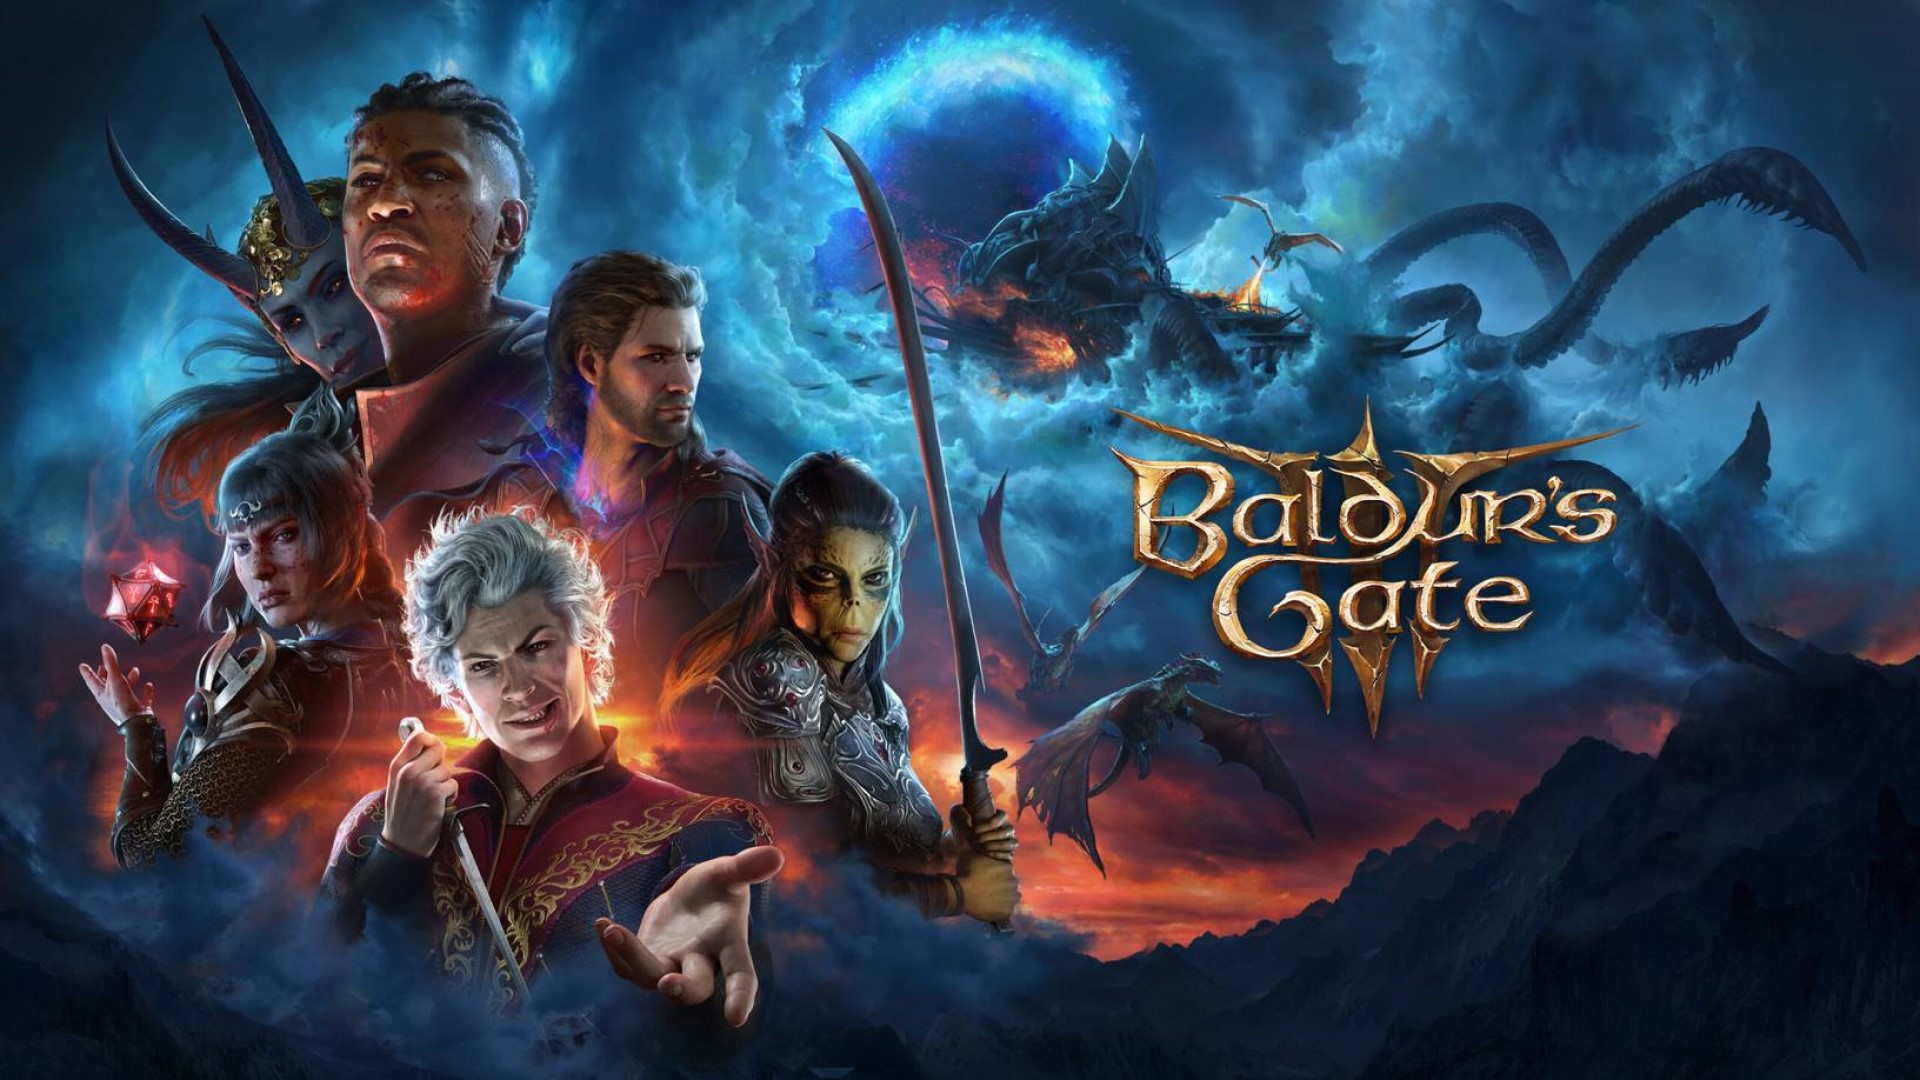 Baldur's Gate III kommer att få mer olycksbådande slut, - säger chefen för Larian Studios